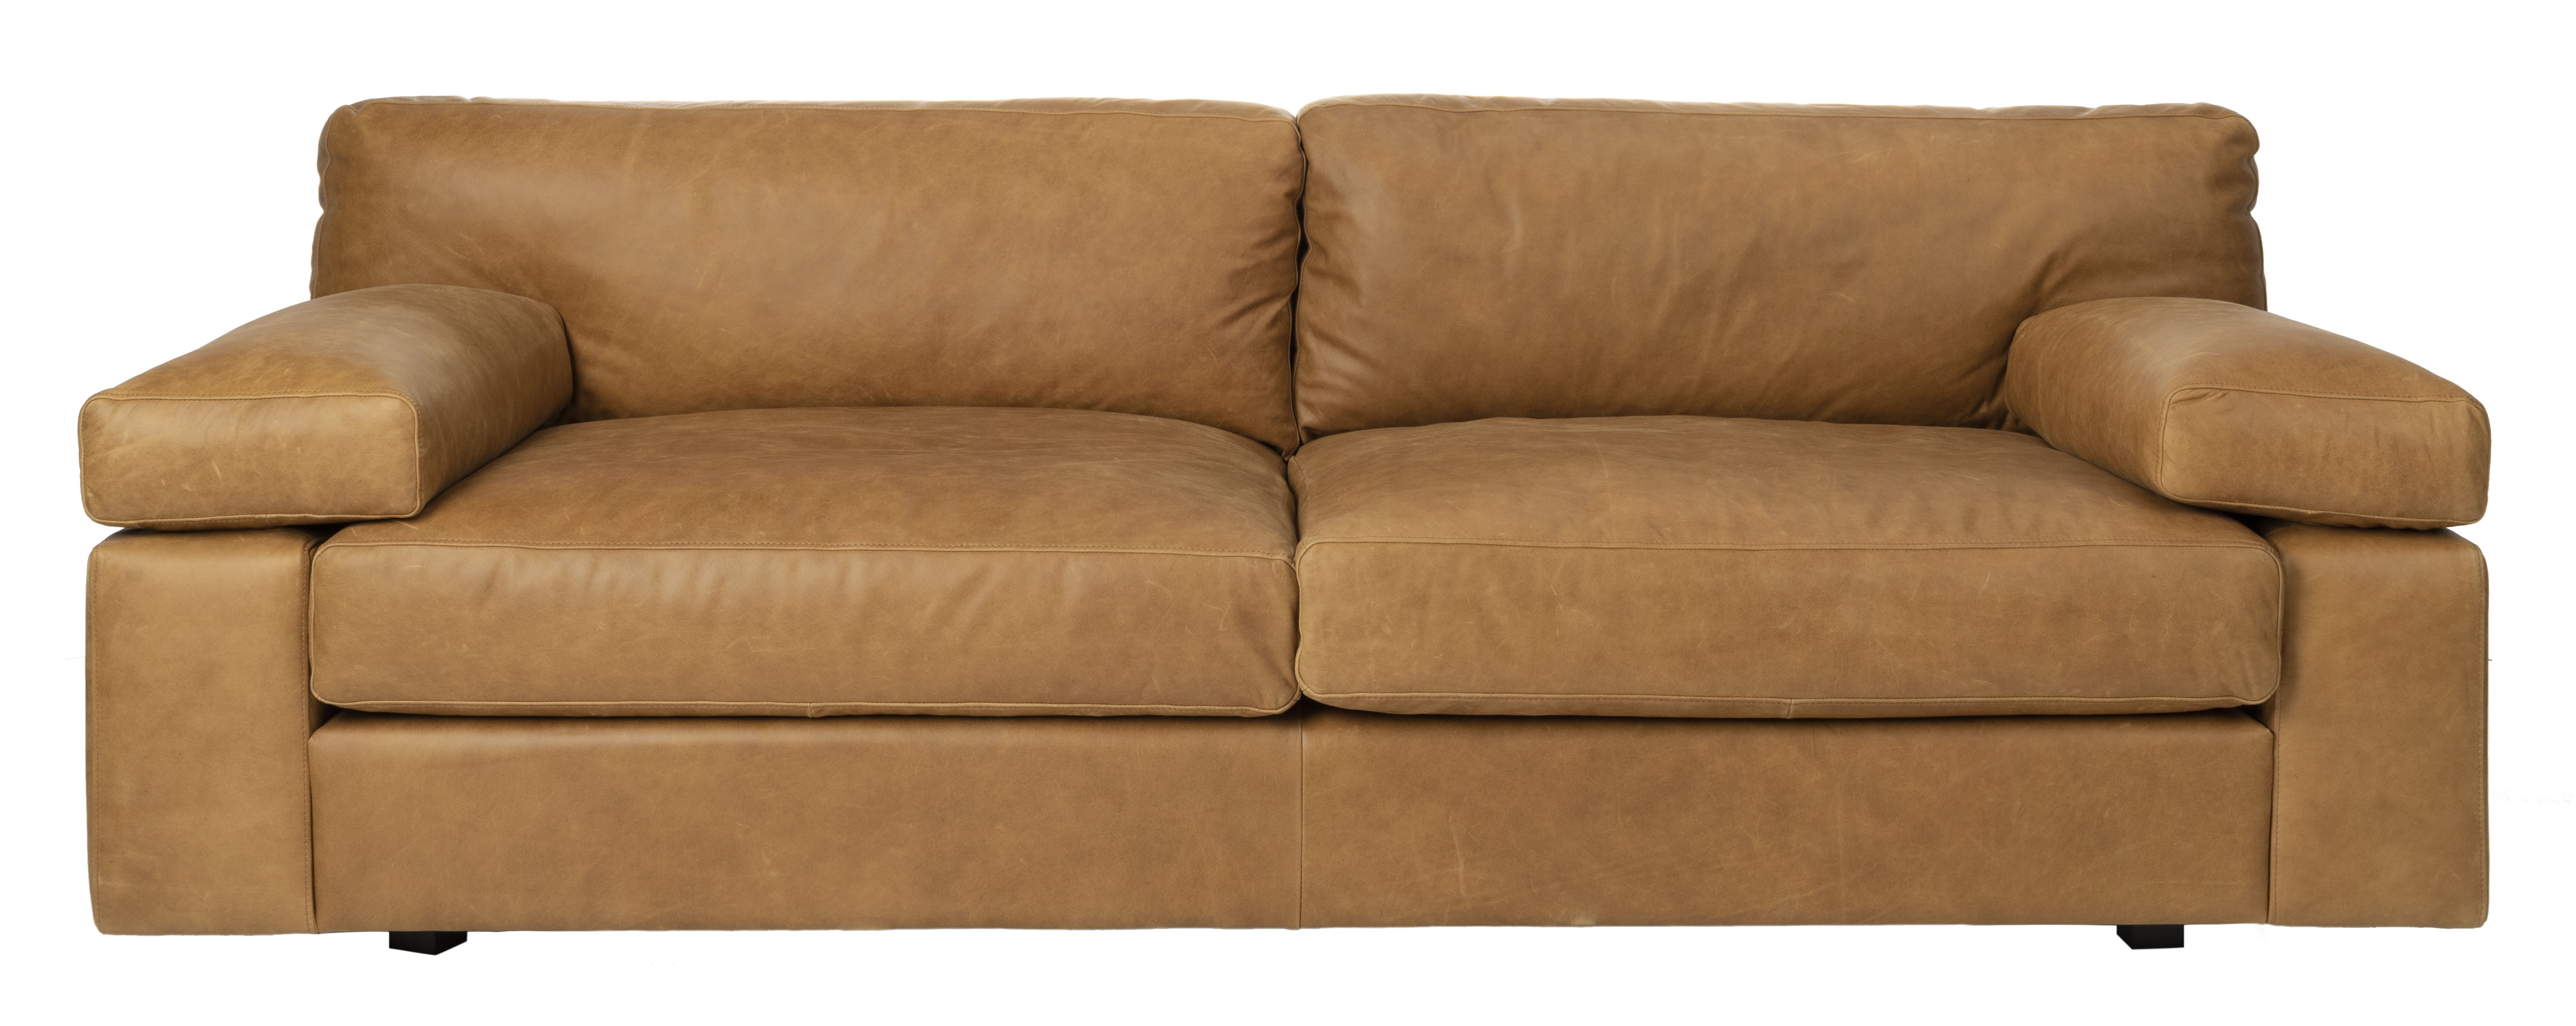 Osma Italian Leather Sofa, Caramel - Image 0